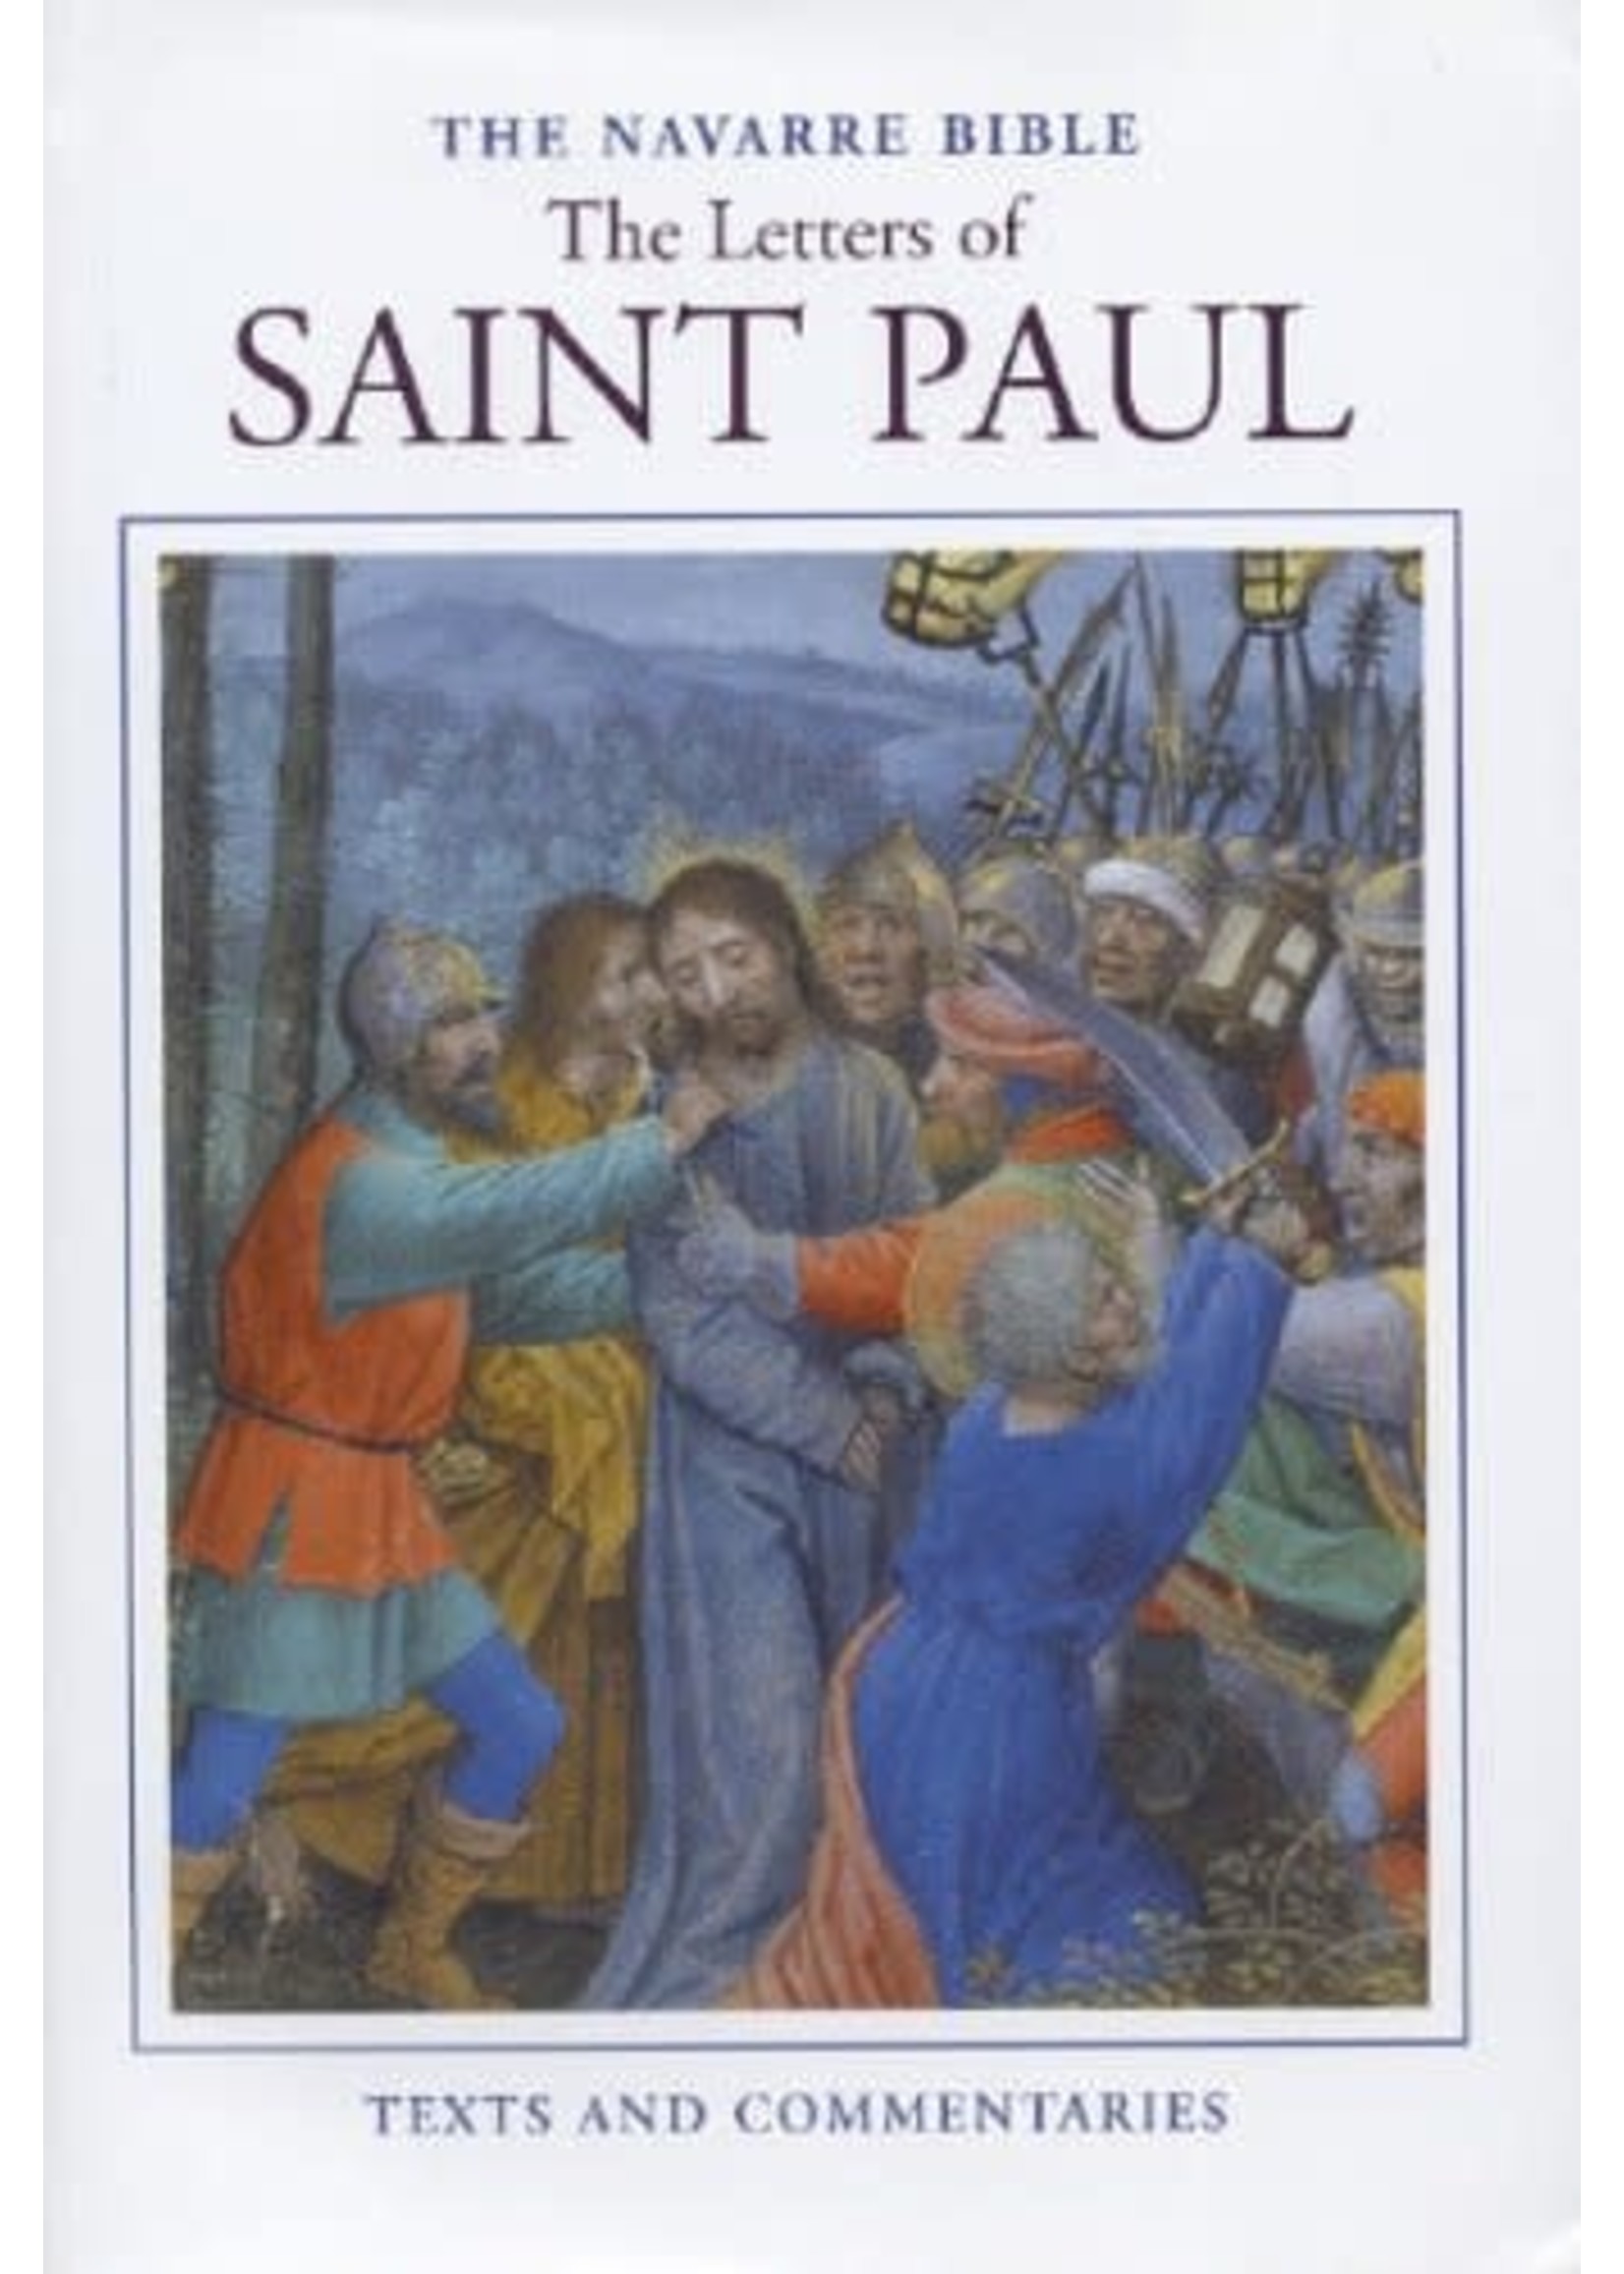 Navarre Bible: The Letters of Saint Paul